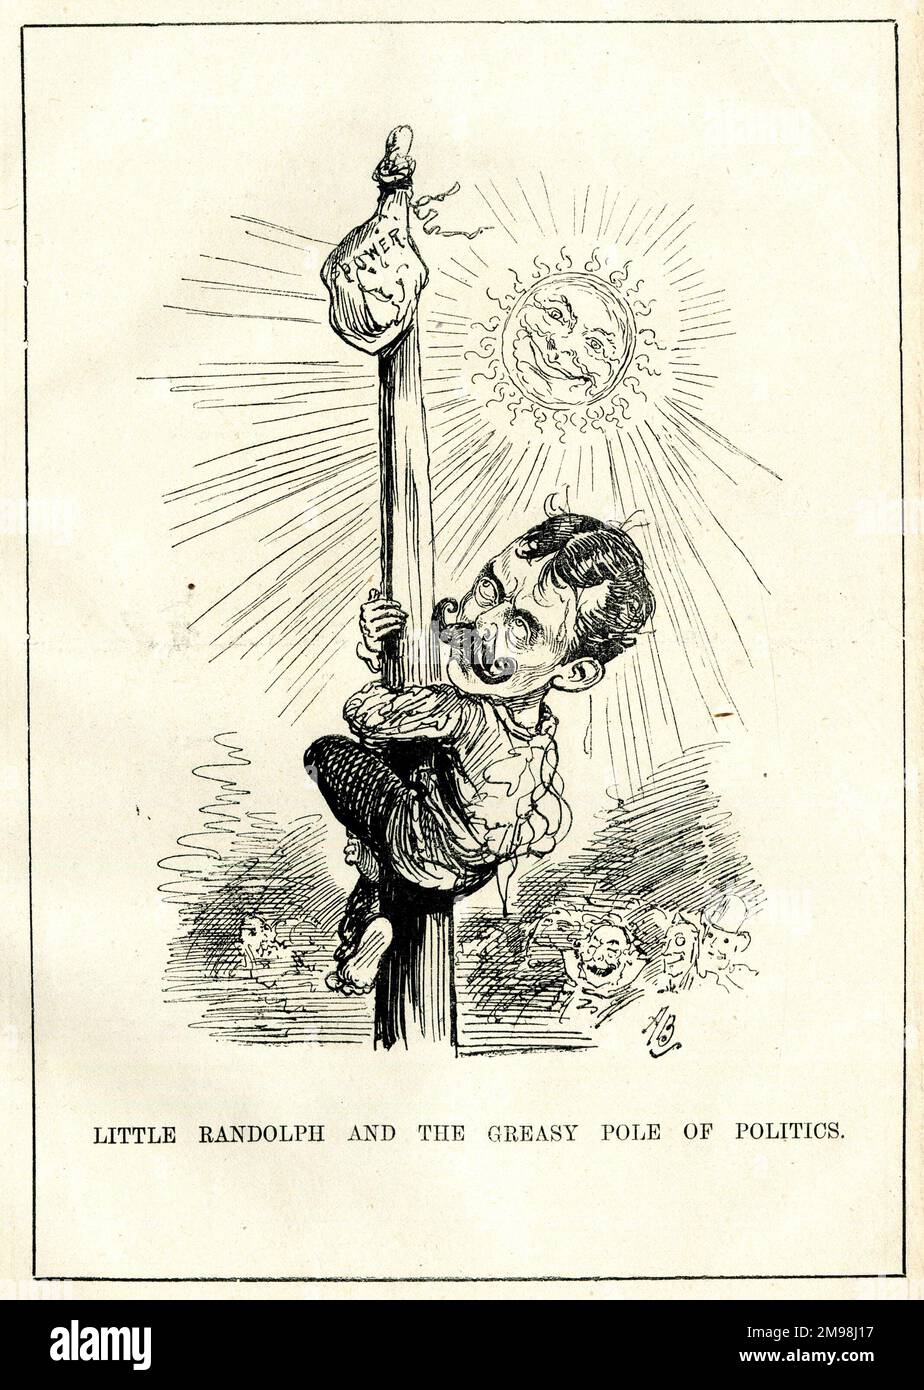 Cartoon, Lord Randolph Henry Spencer Churchill (1849-1895), britischer Politiker - Little Randolph und der schmierige Pol der Politik. Zu dieser Zeit kämpfte er für demokratischen (progressiven) Toryismus und machte sich einen Namen. Stockfoto